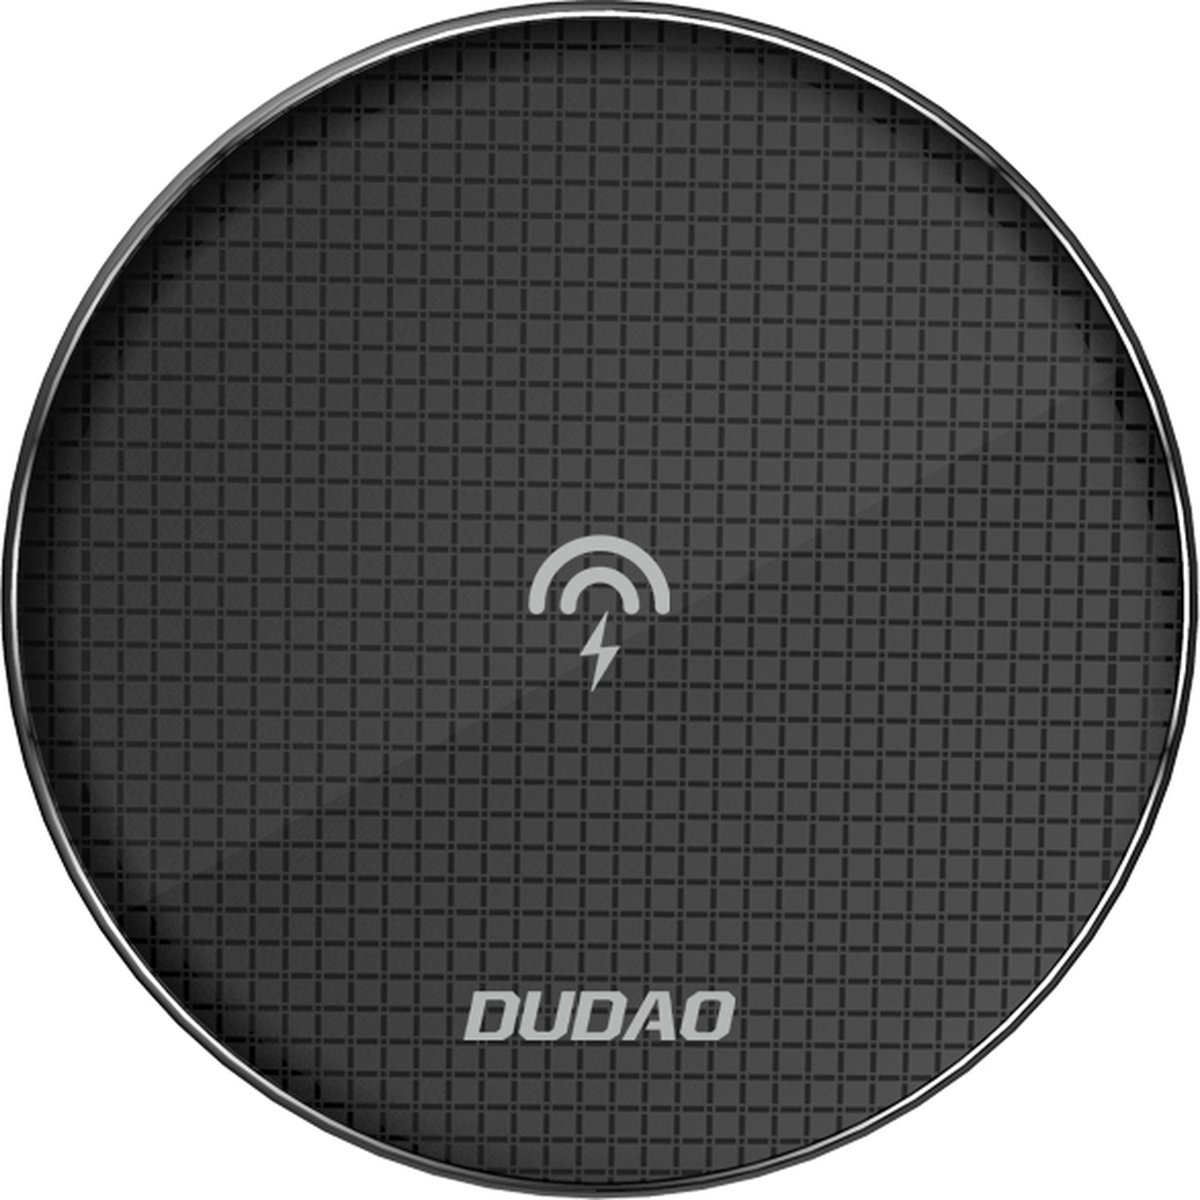 DUDAO A10B, Binnen, USB, 5 V, Draadloos opladen, Zwart